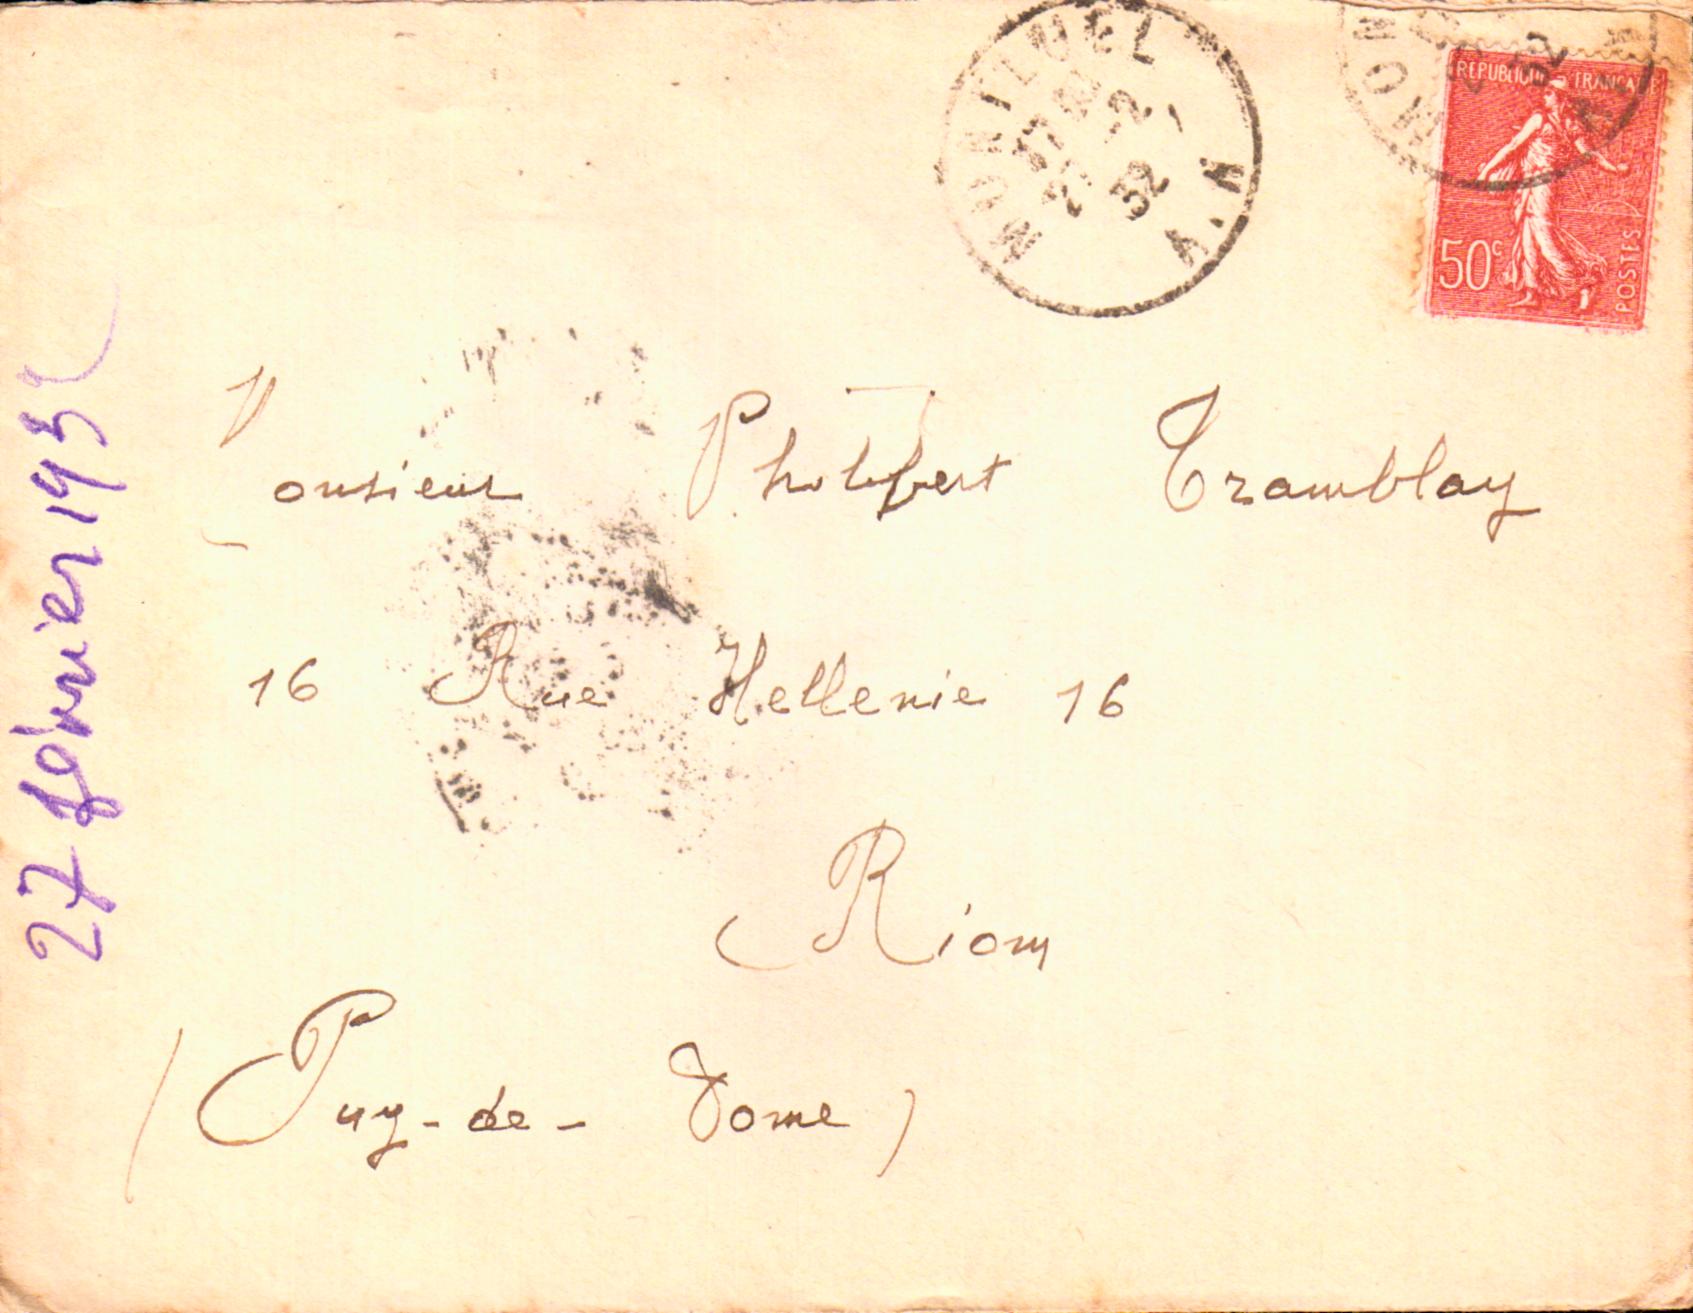 Cartes postales anciennes > CARTES POSTALES > carte postale ancienne > cartes-postales-ancienne.com France  Divers regions et departements pays